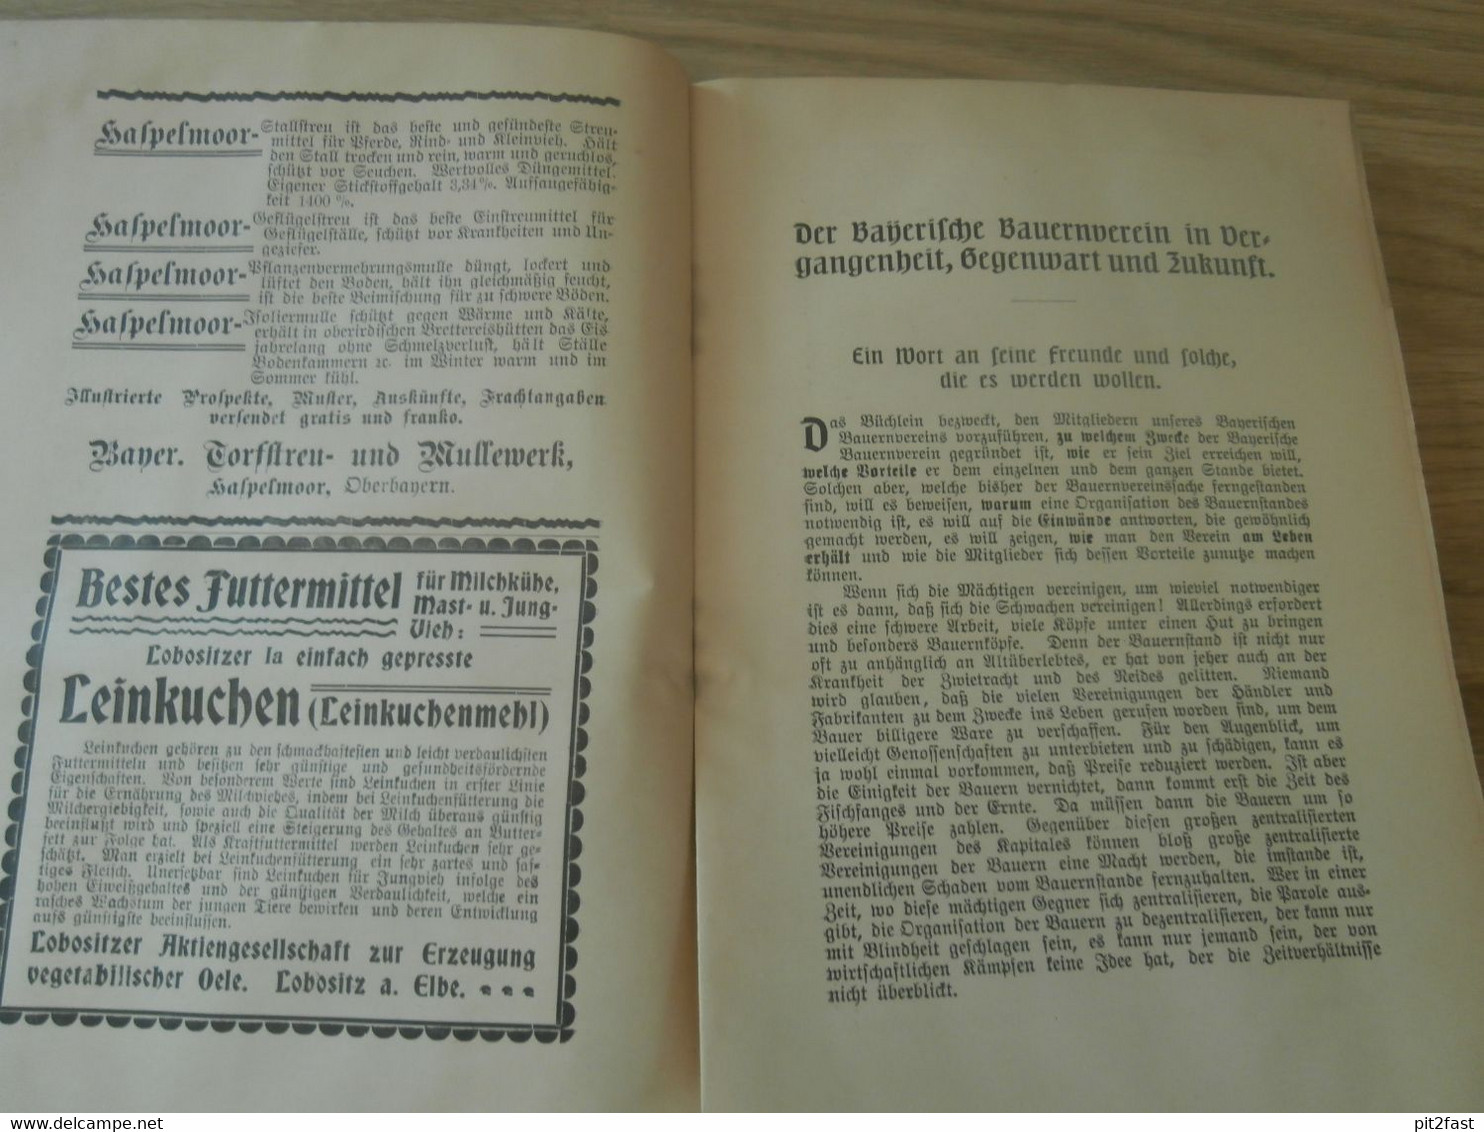 Der Bayerische Bauernverein In Vergangenheit, Gegenwart Und Zukunft , 1906 , Bayern , Bauern , Landwirtschaft , Ansbach - Raritäten